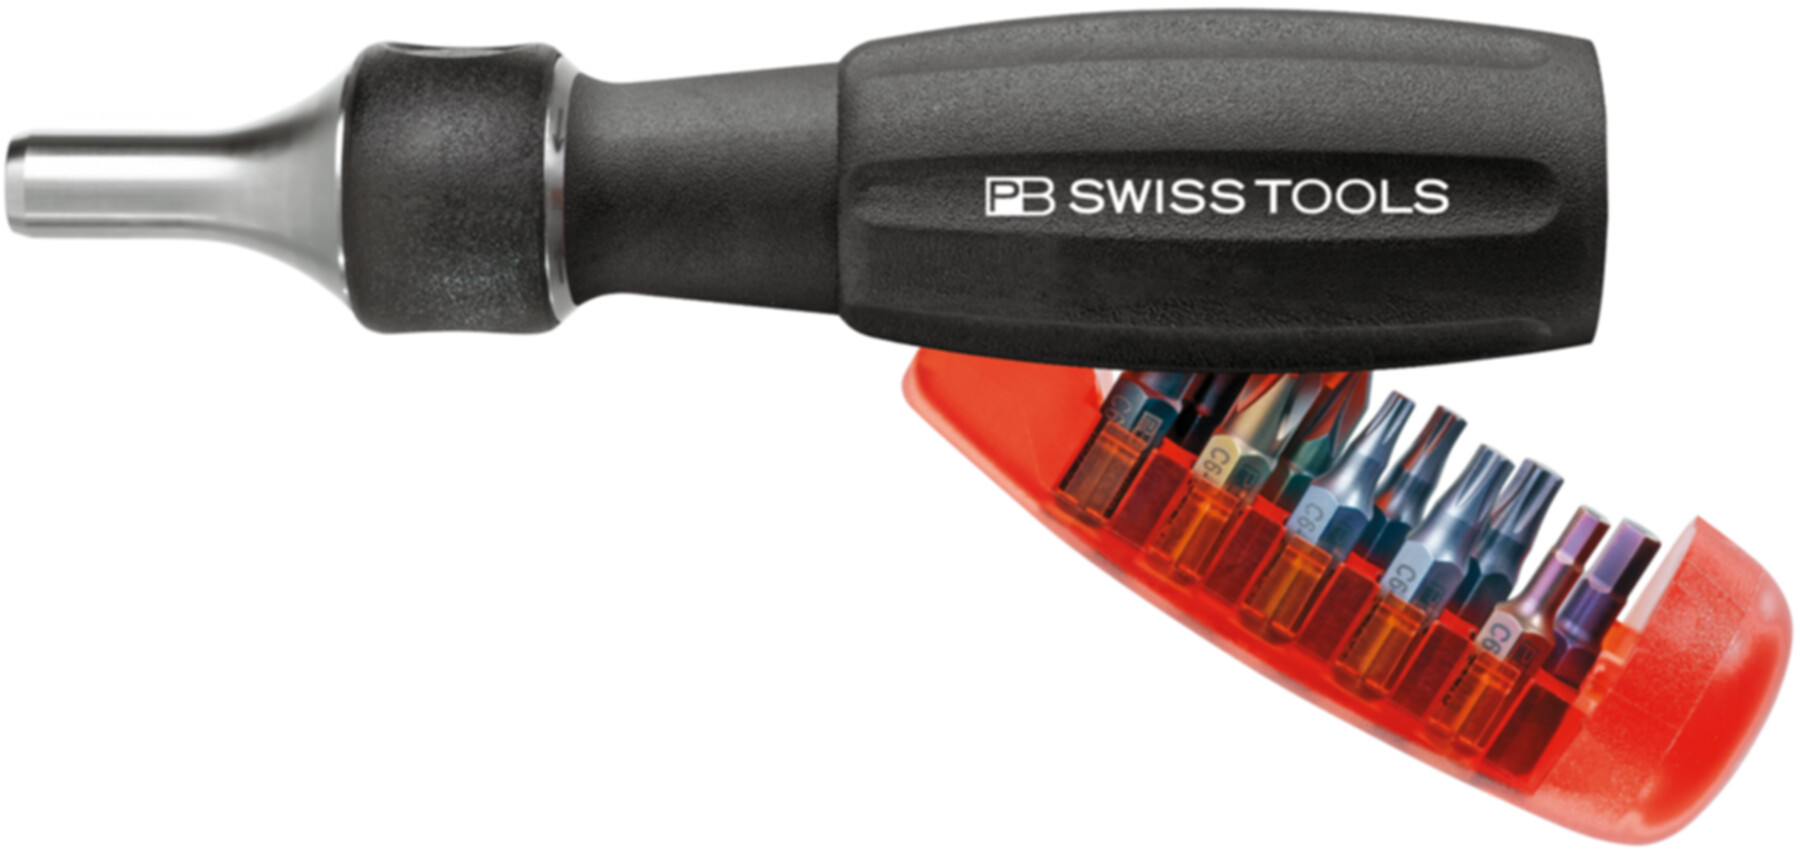 Tool long. Swiss Tools держатель бит. PB Swiss держатель бит. PB Swiss Tools биты. Swiss Tools PB 500.